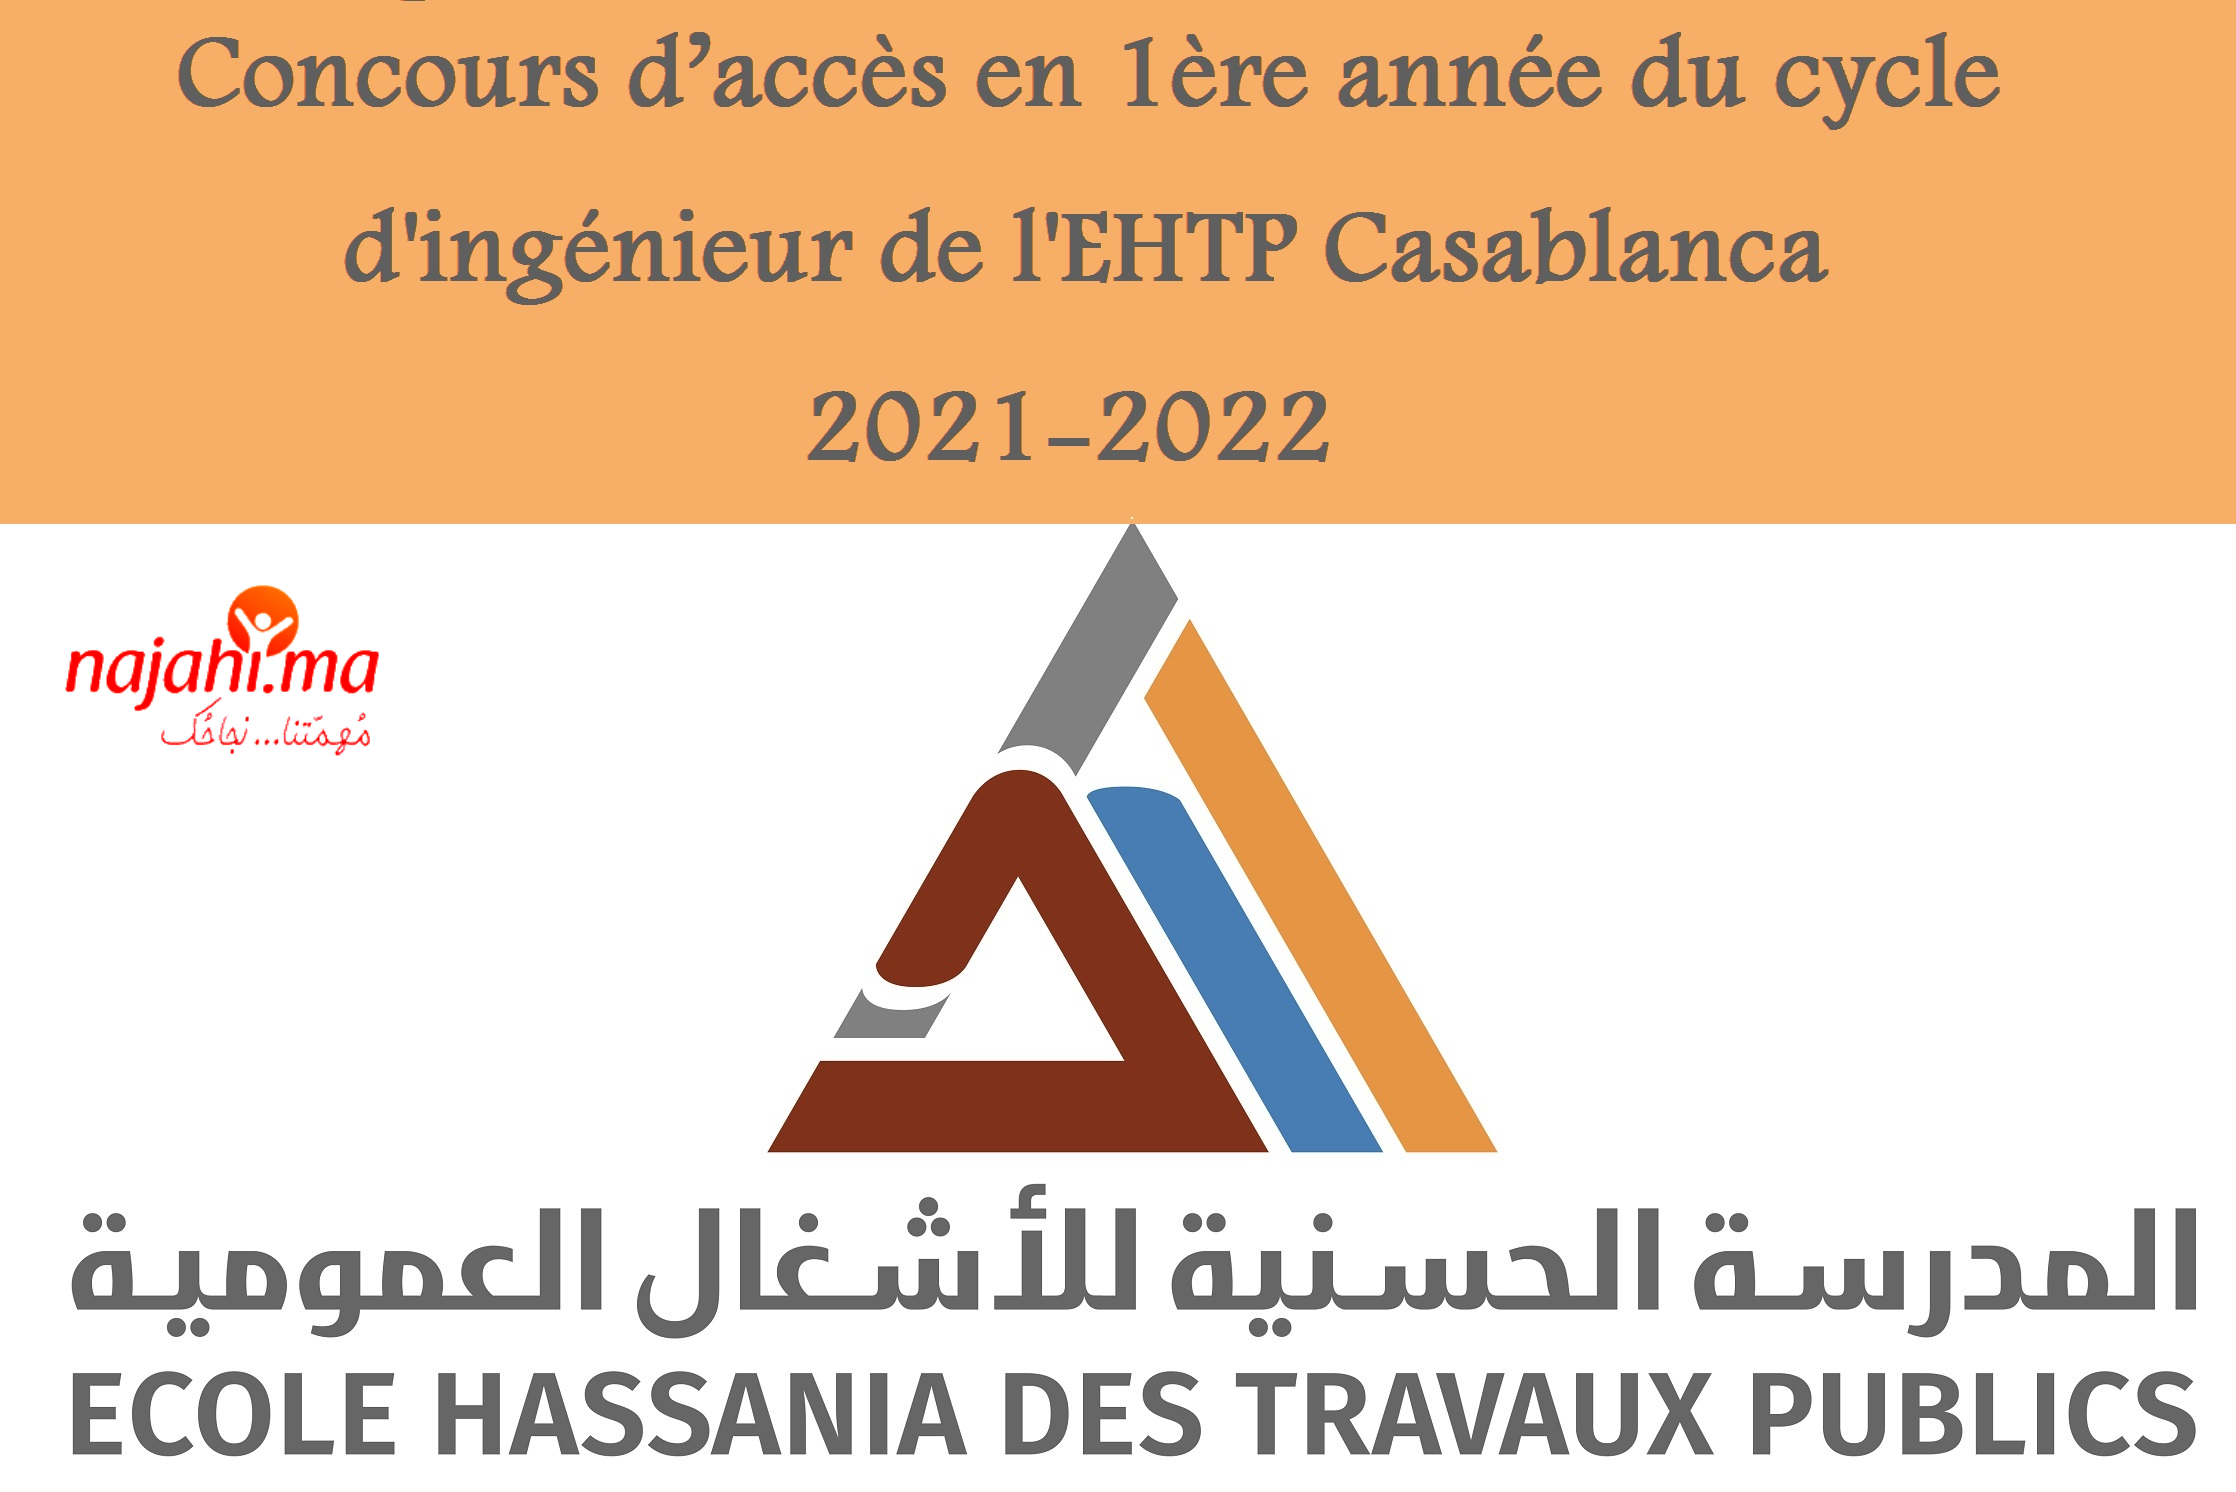 Concours d’accès en 1ère année du cycle d'ingénieur de l'EHTP Casablanca 2021-2022